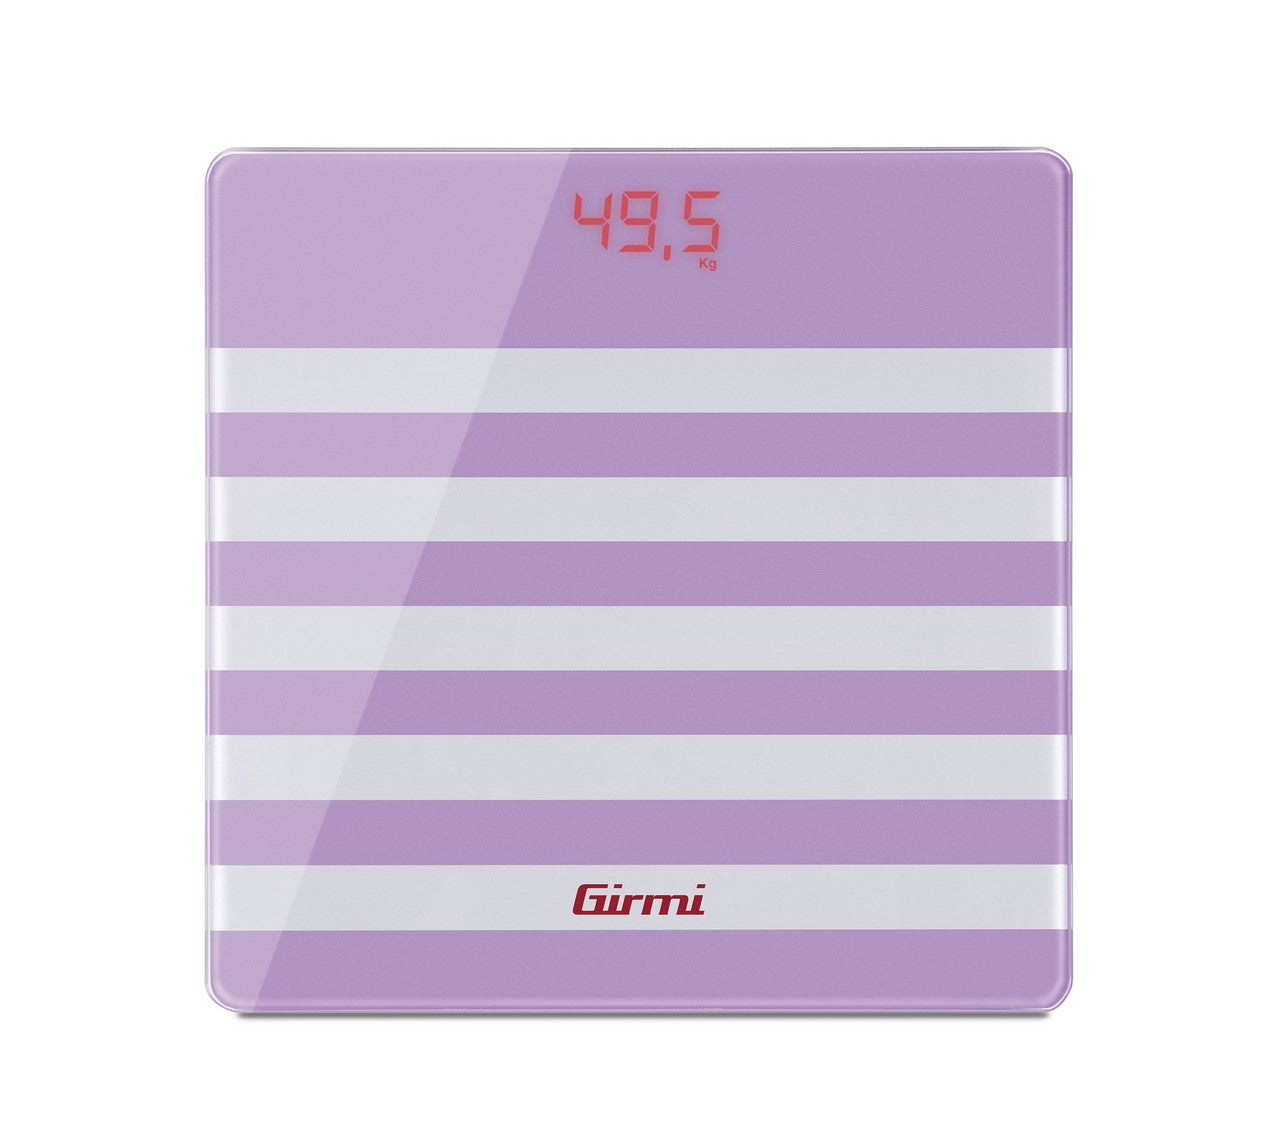 Girmi BP21 személymérleg lila színben